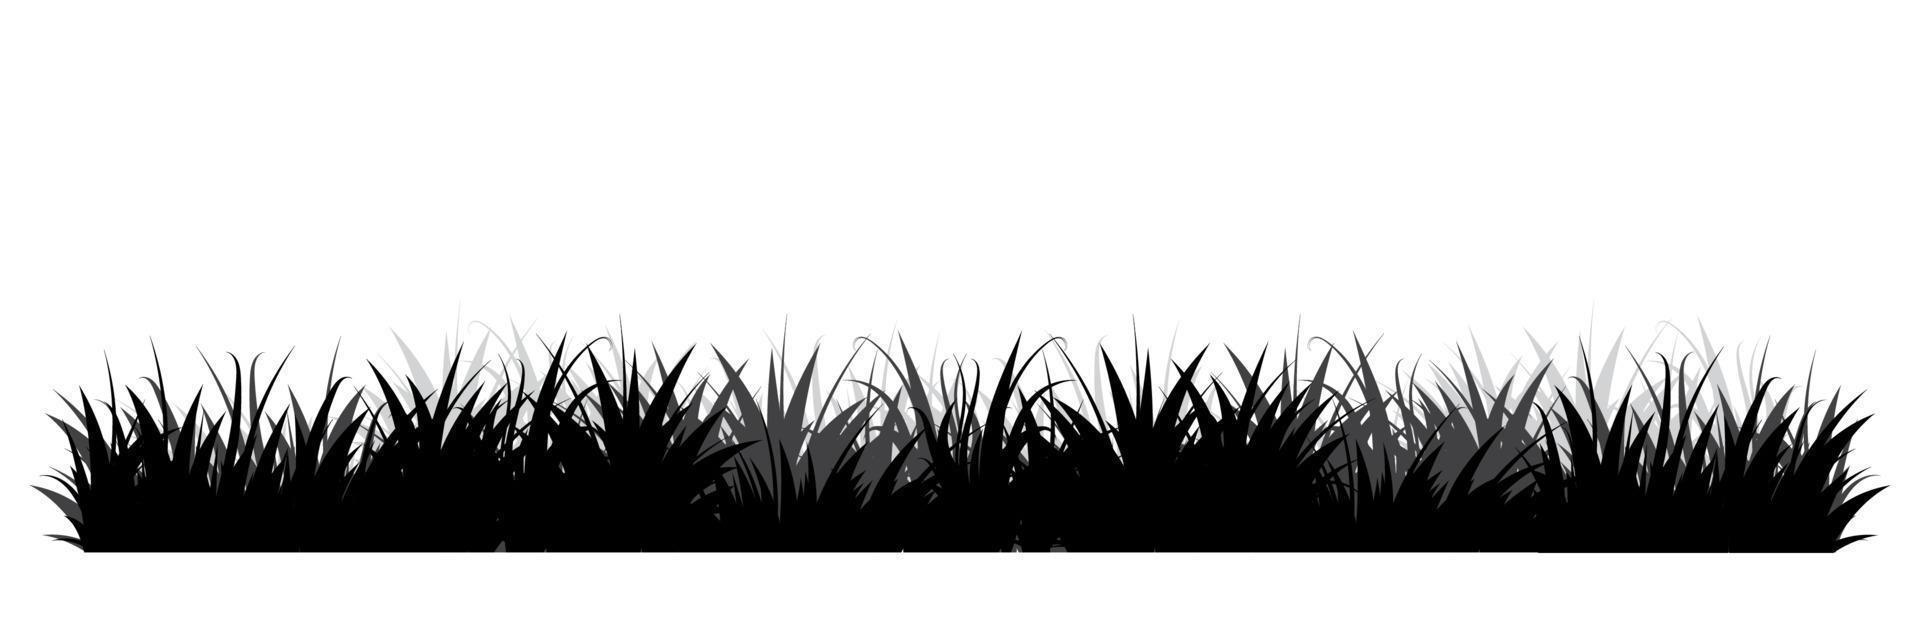 schwarze Grassilhouetten. Blumenhintergrund. wildes Gras. Gras grenzt Silhouette. Vektor-Illustration vektor